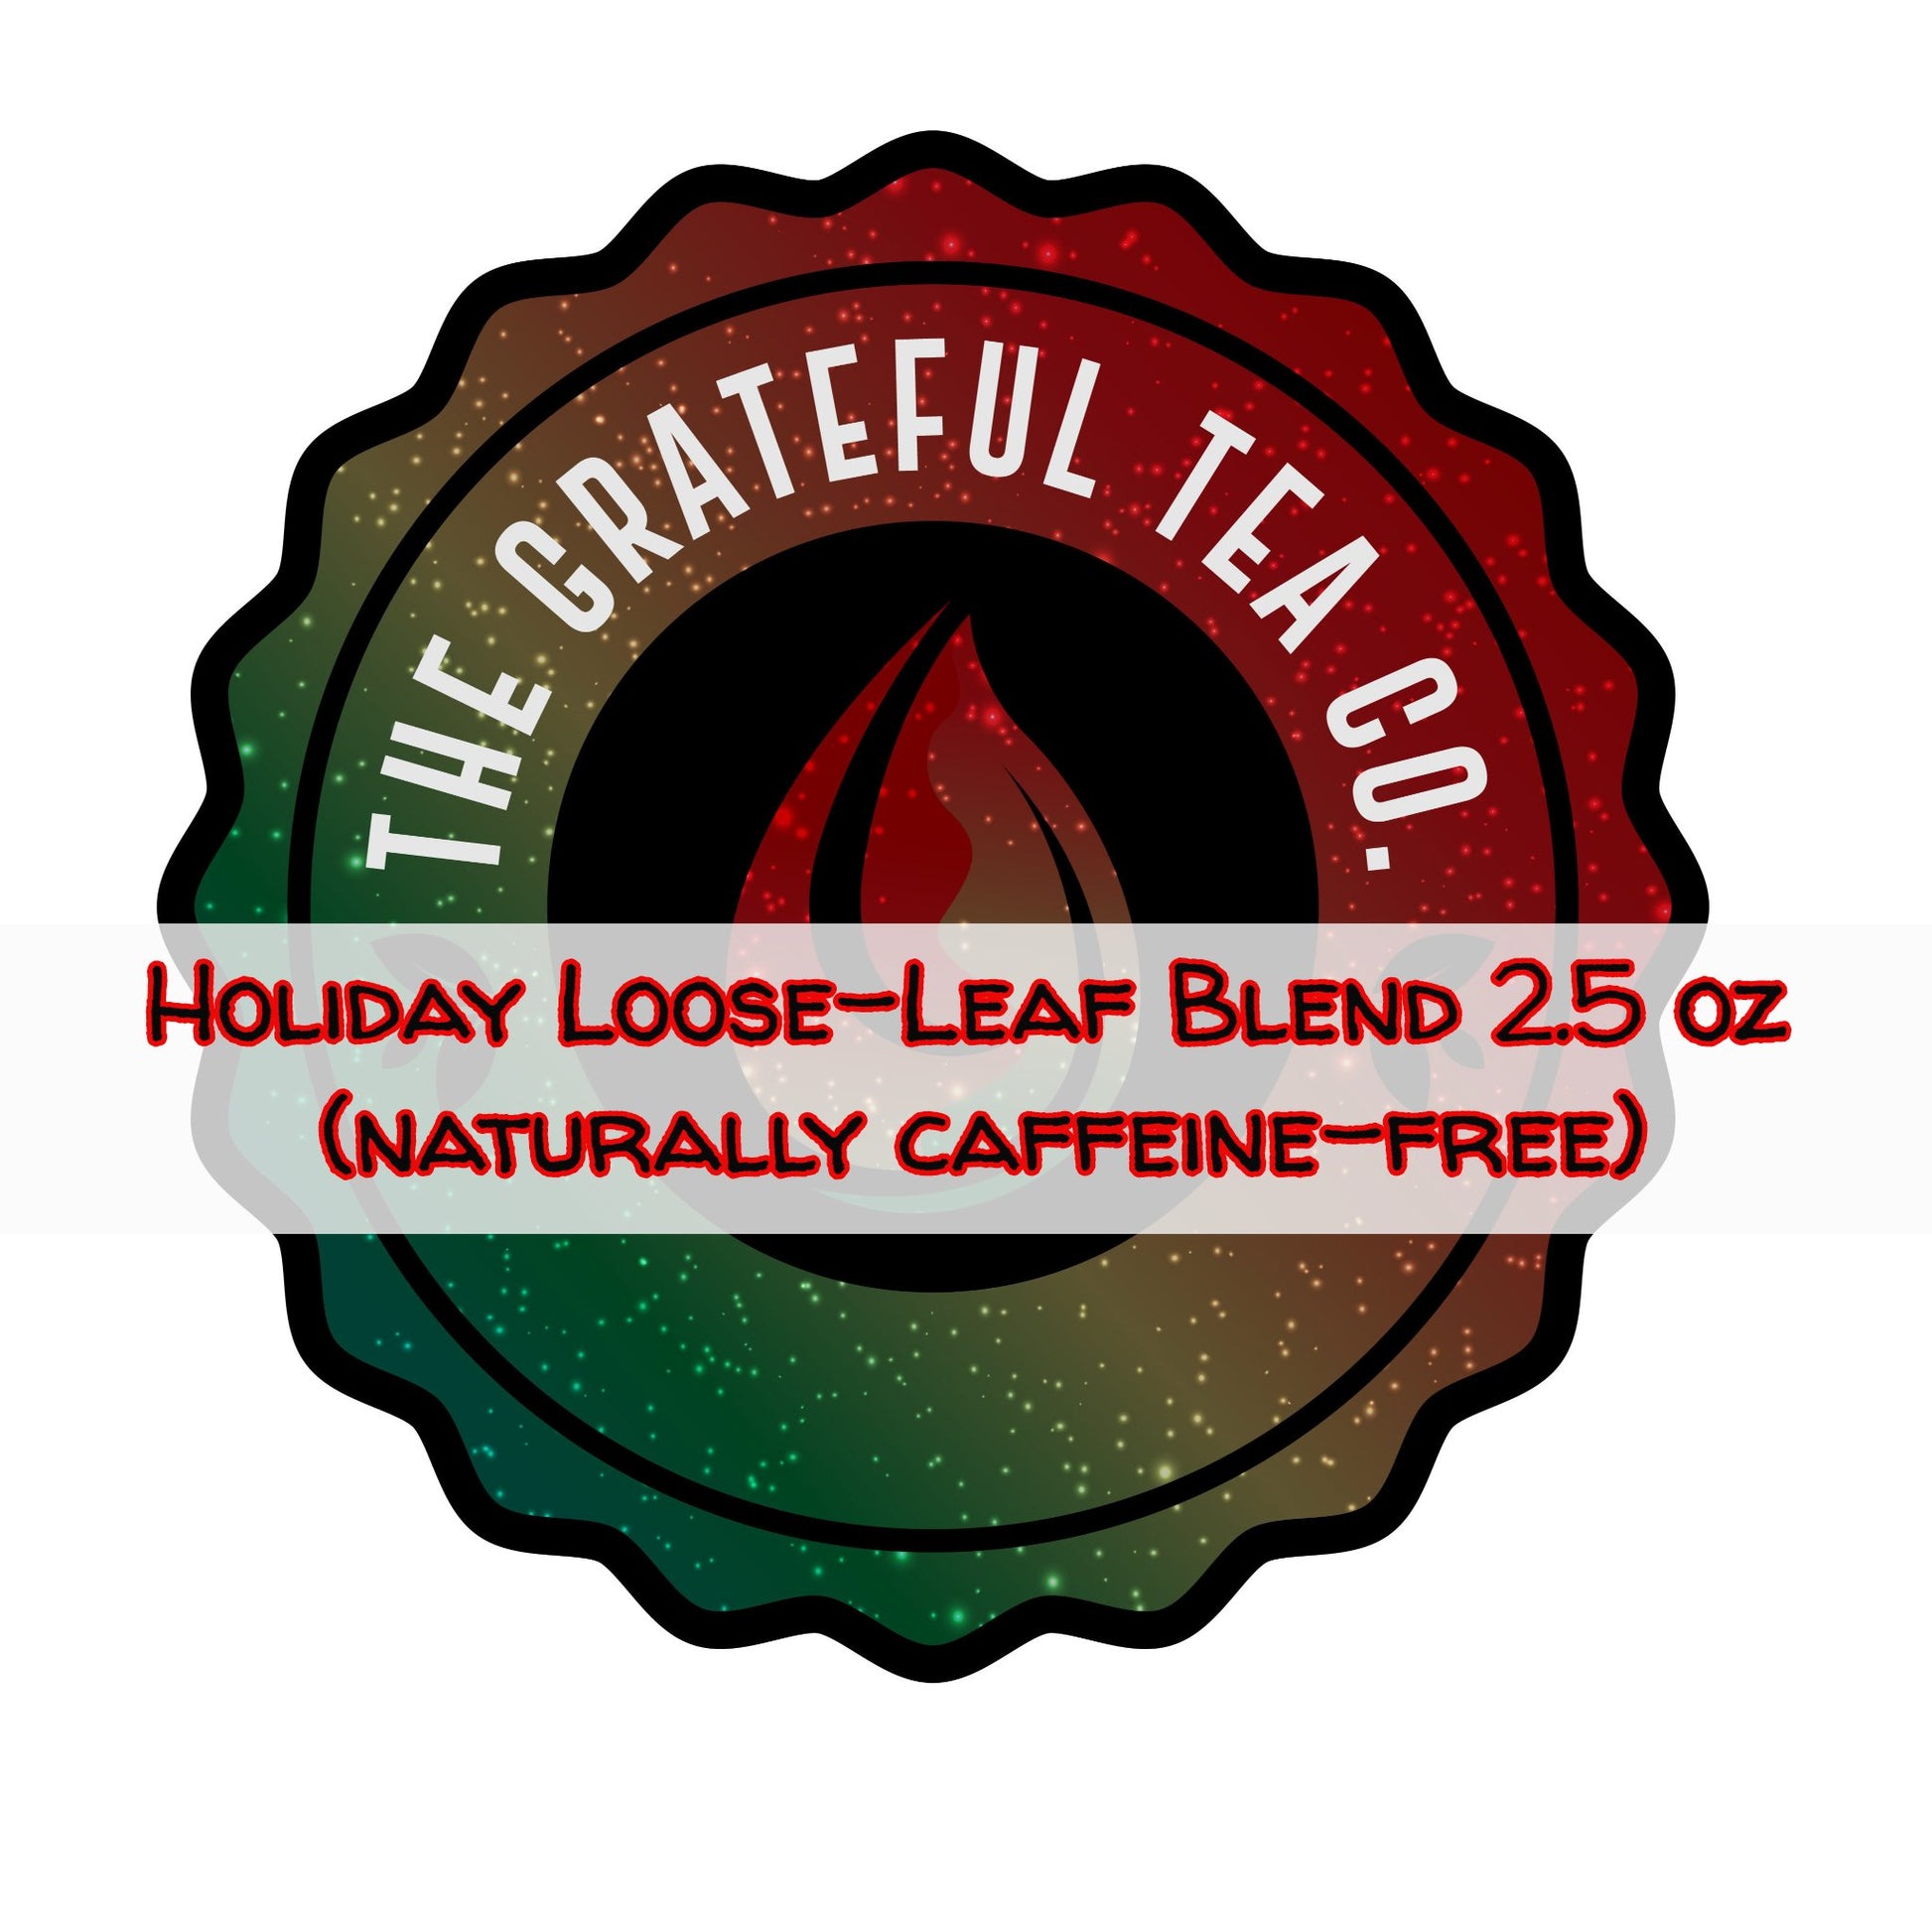 The Grateful Tea Holiday Loose-Leaf Blend 2.5 oz (naturally caffeine-free) Loose-leaf tea The Grateful Tea Co. 